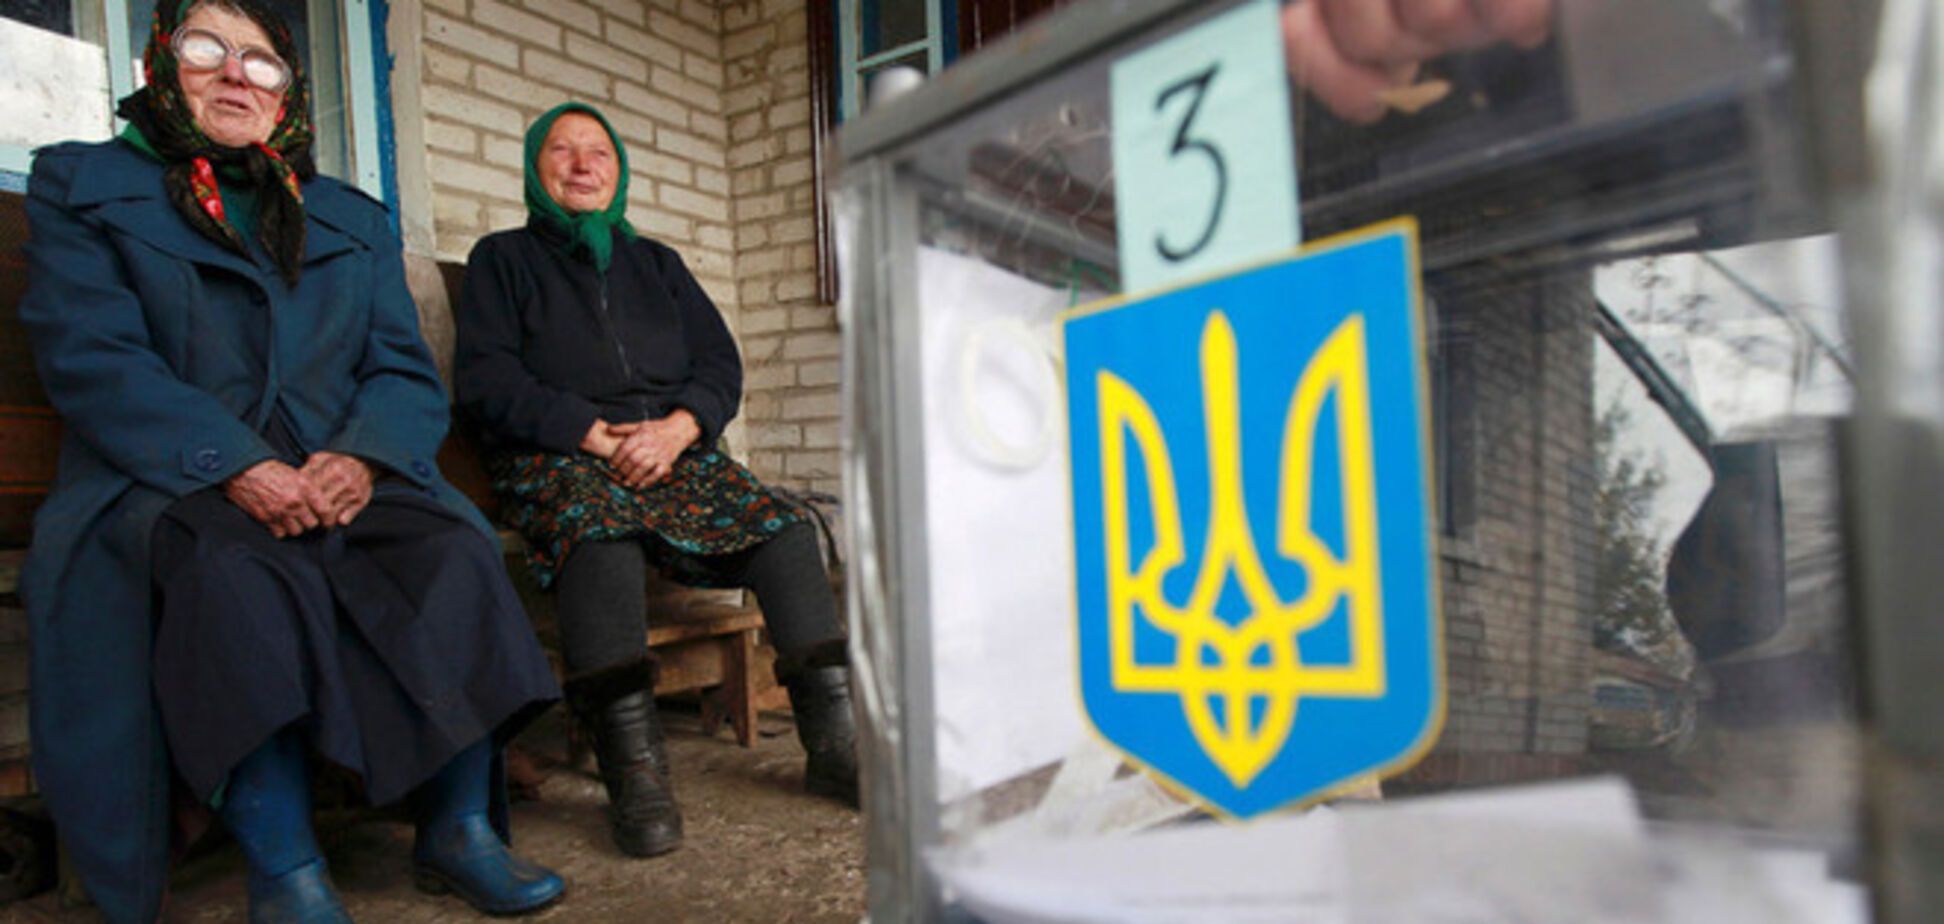 Політика Путіна рекордно обвалила рейтинг проросійських партій в Україні - Нємцов